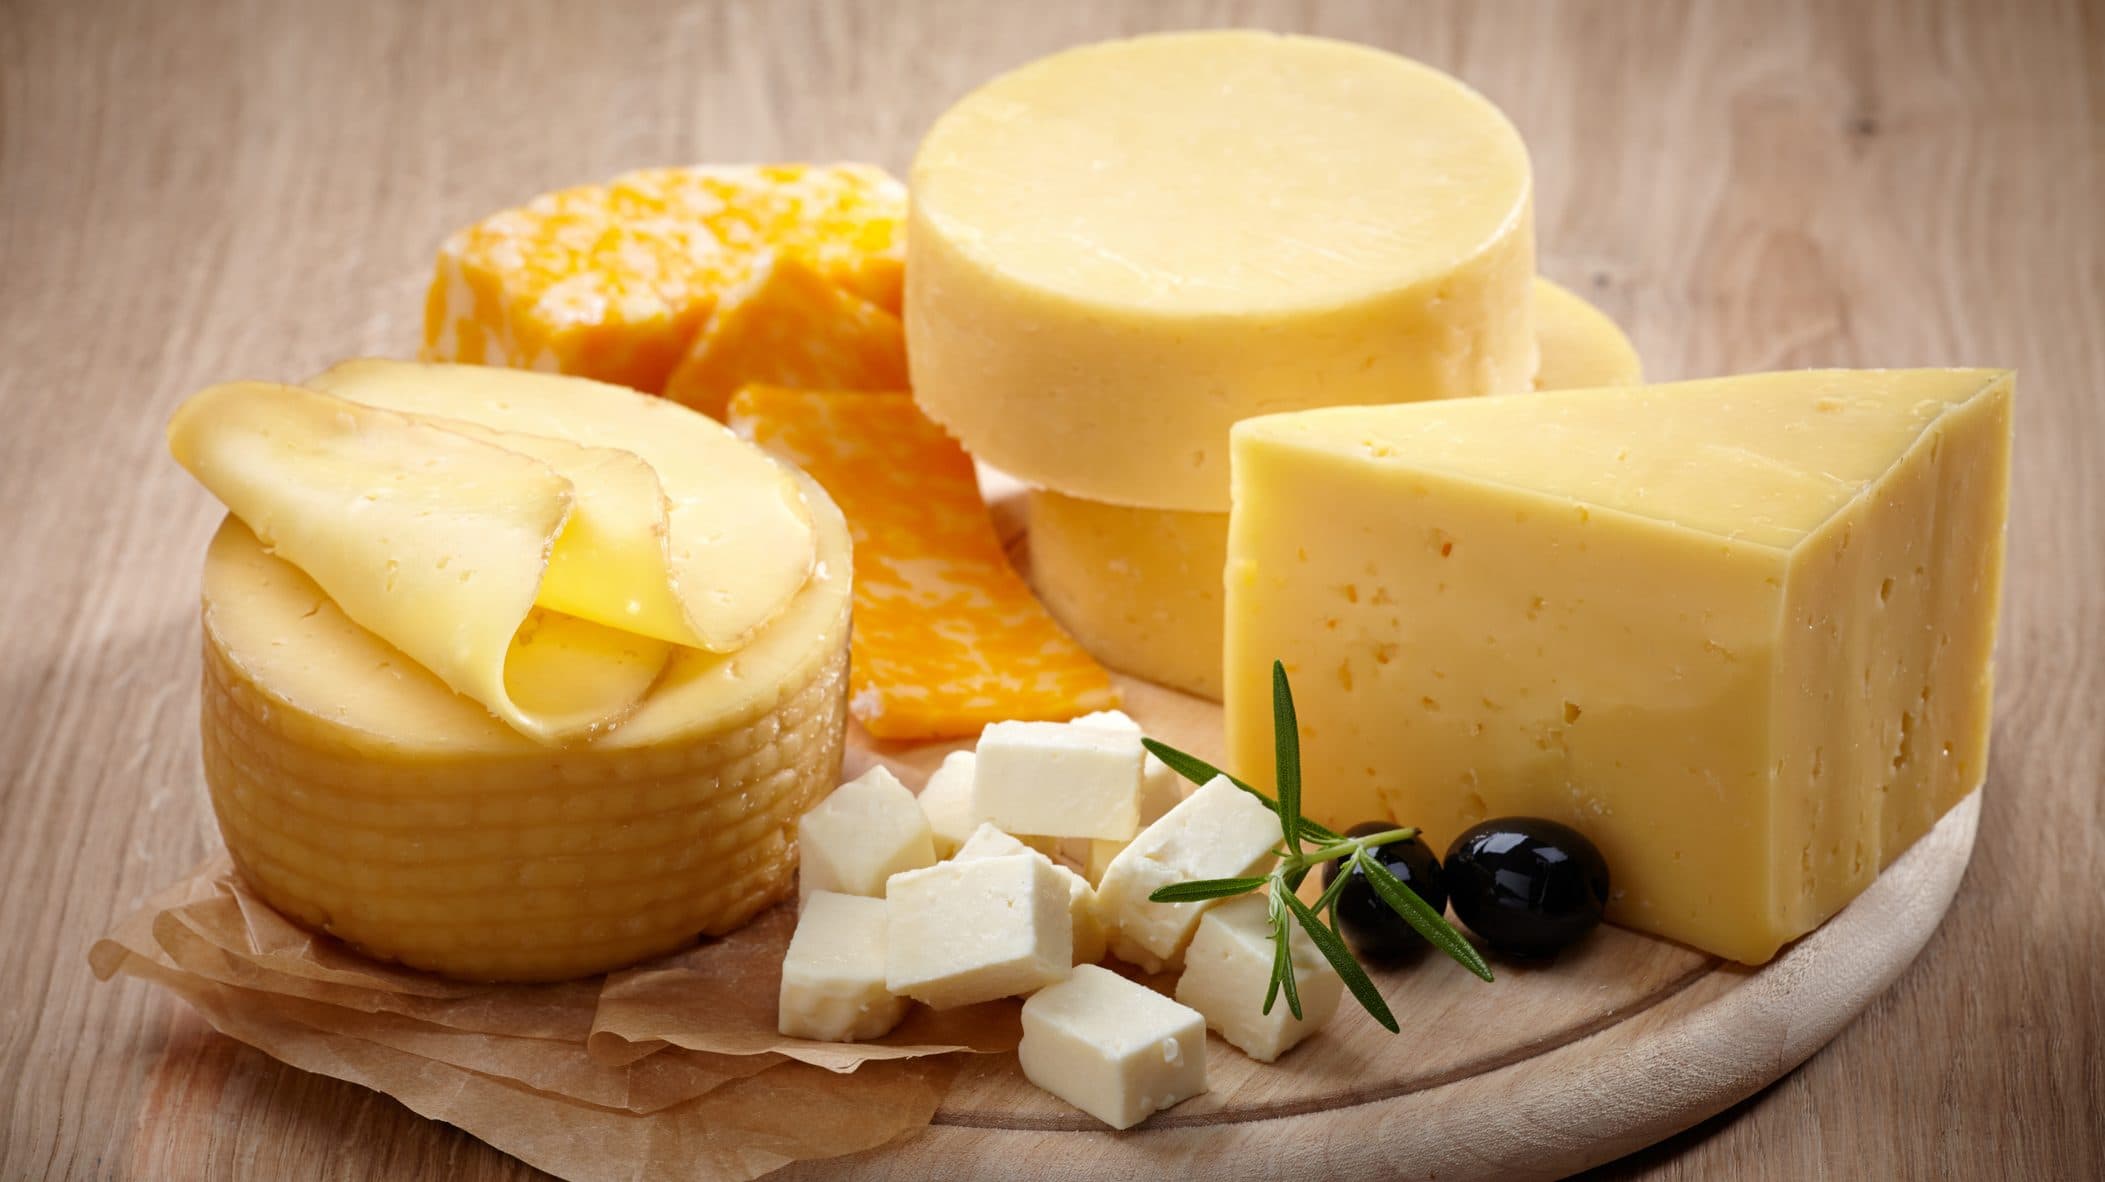 A legfinomabb sajtok – melyik a kedvenced?